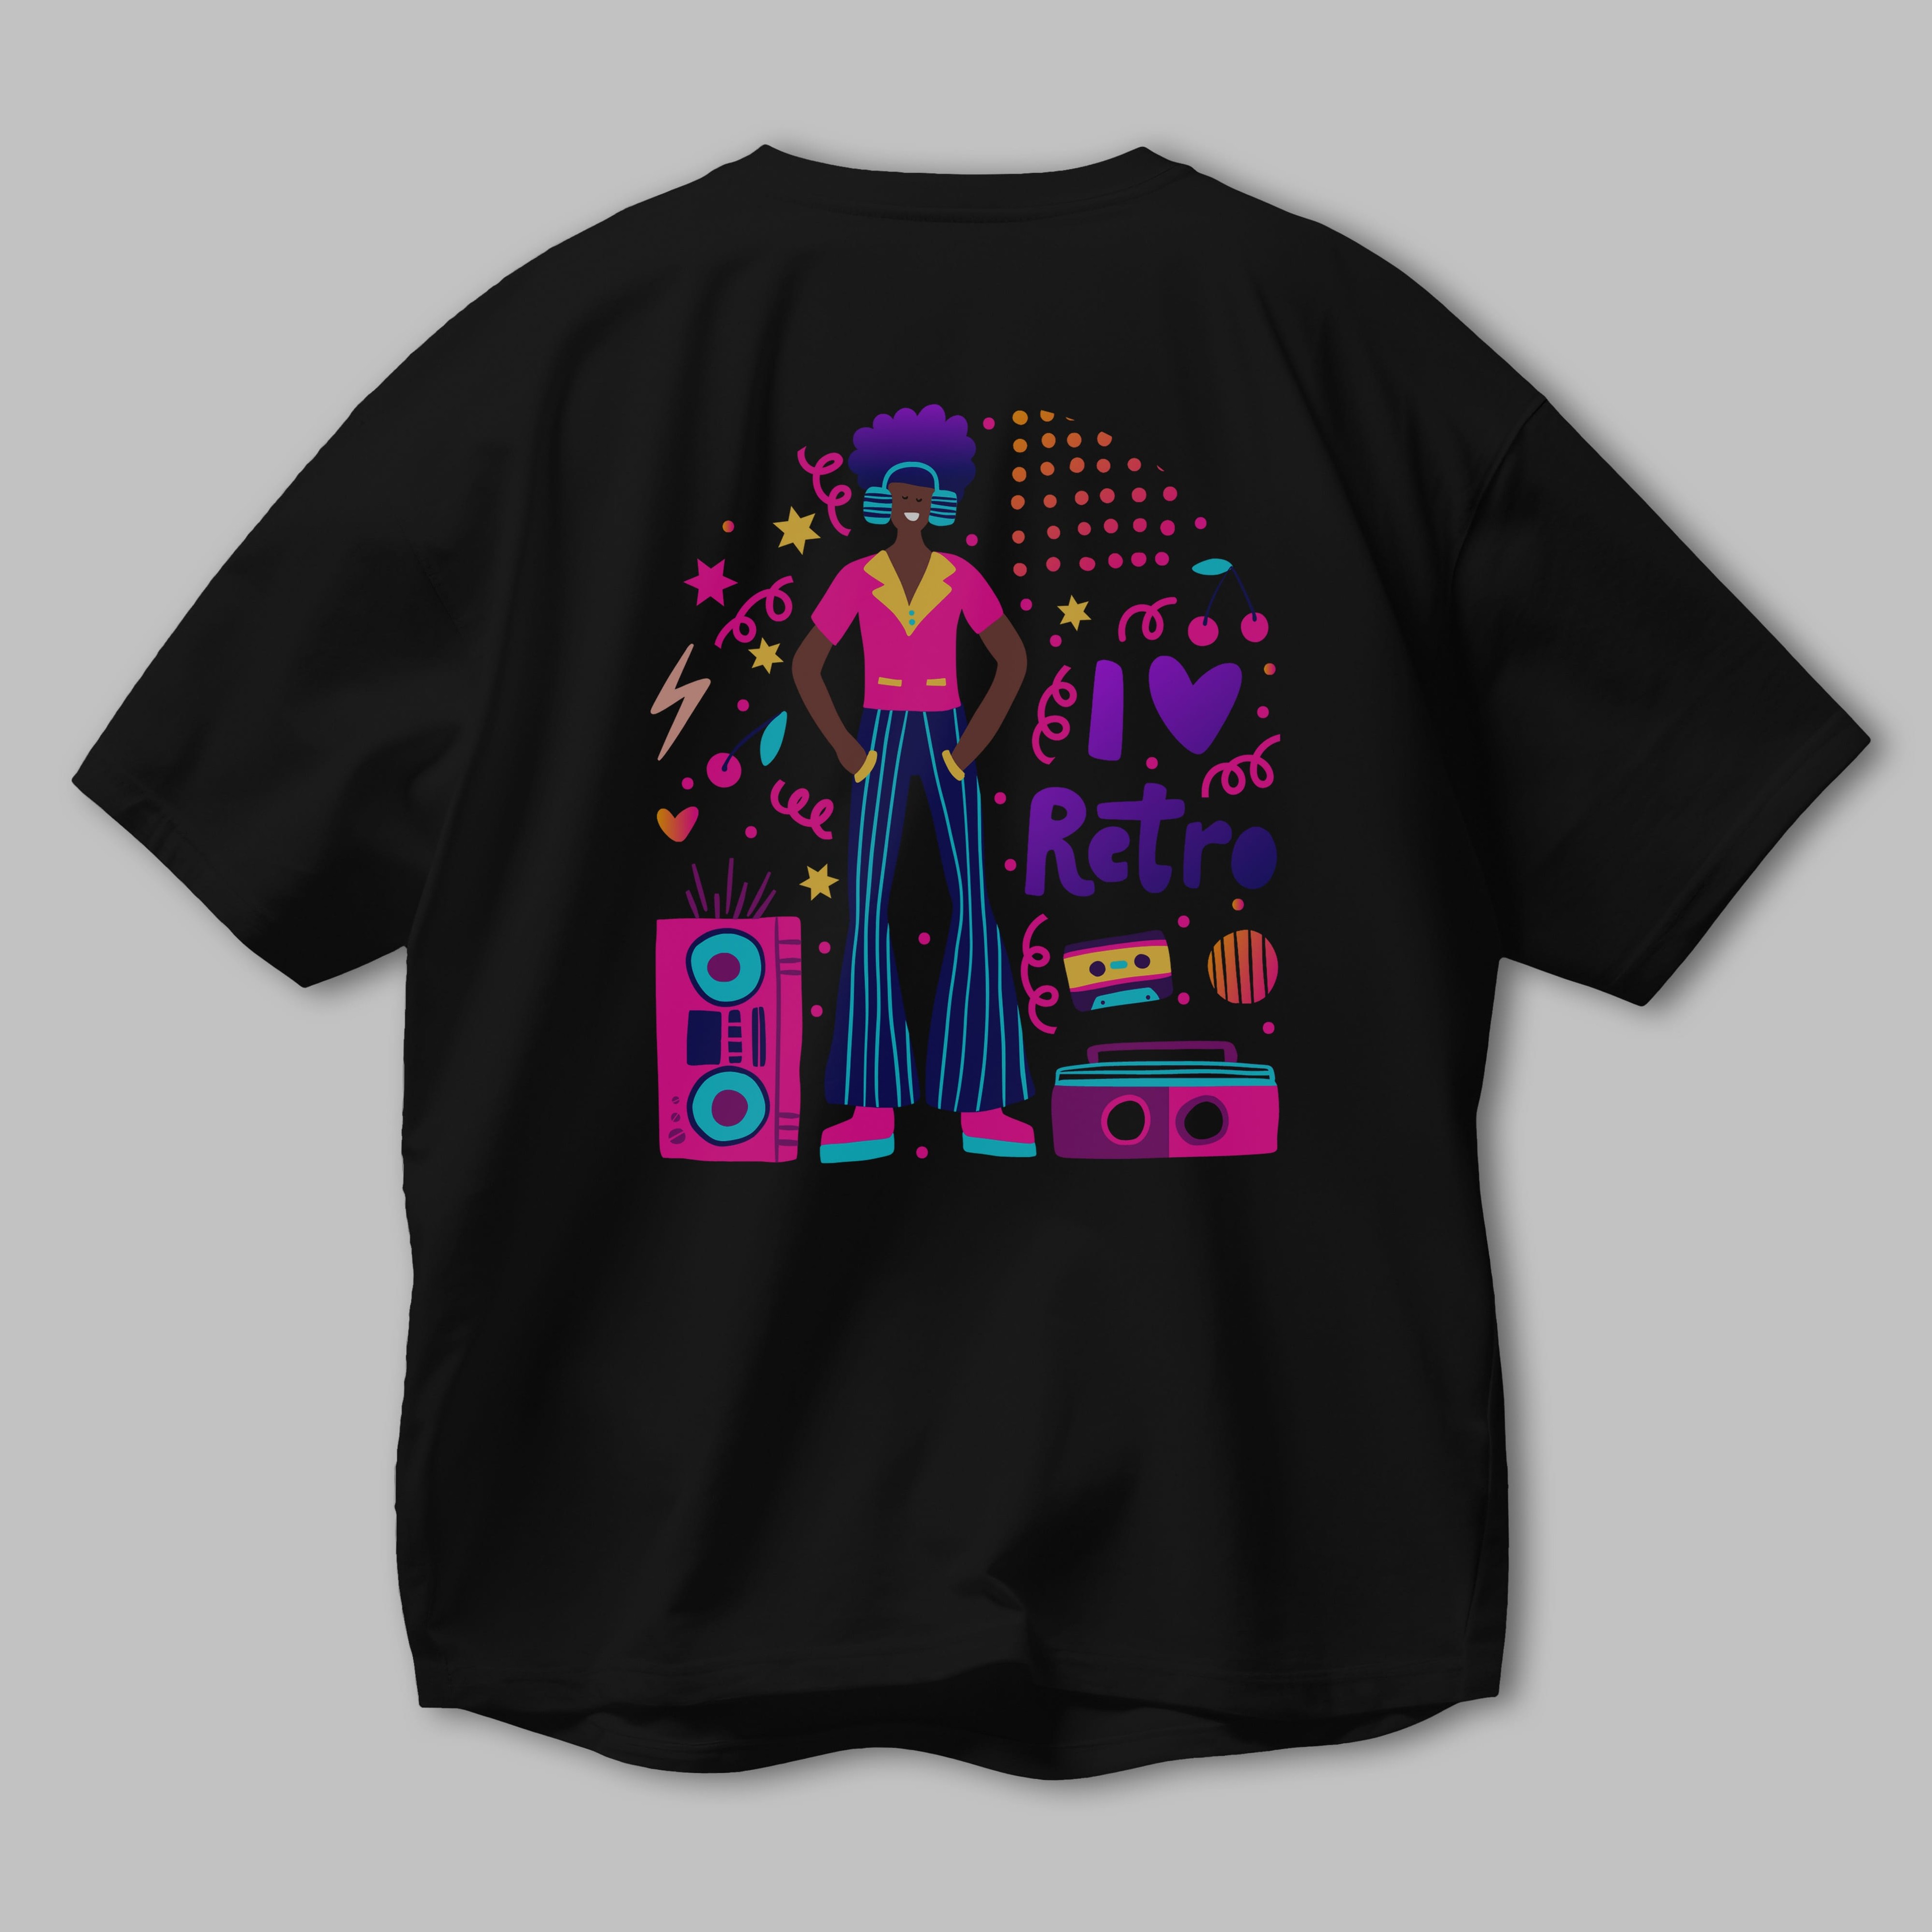 Retro Boy Party Arka Baskılı Oversize t-shirt Erkek Kadın Unisex